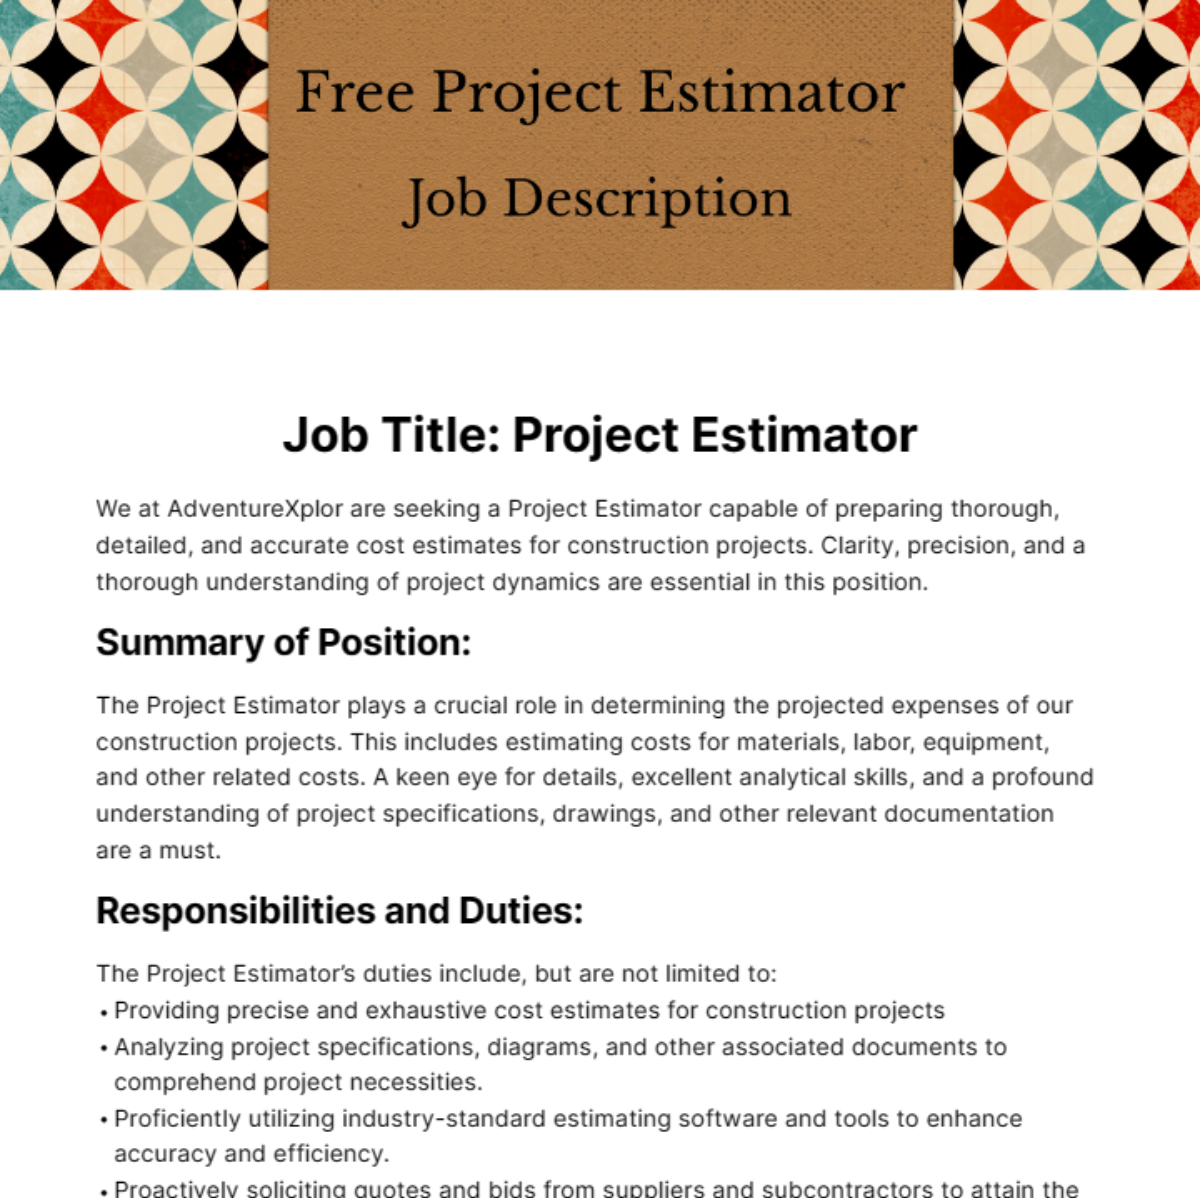 Free Project Estimator Job Description Template